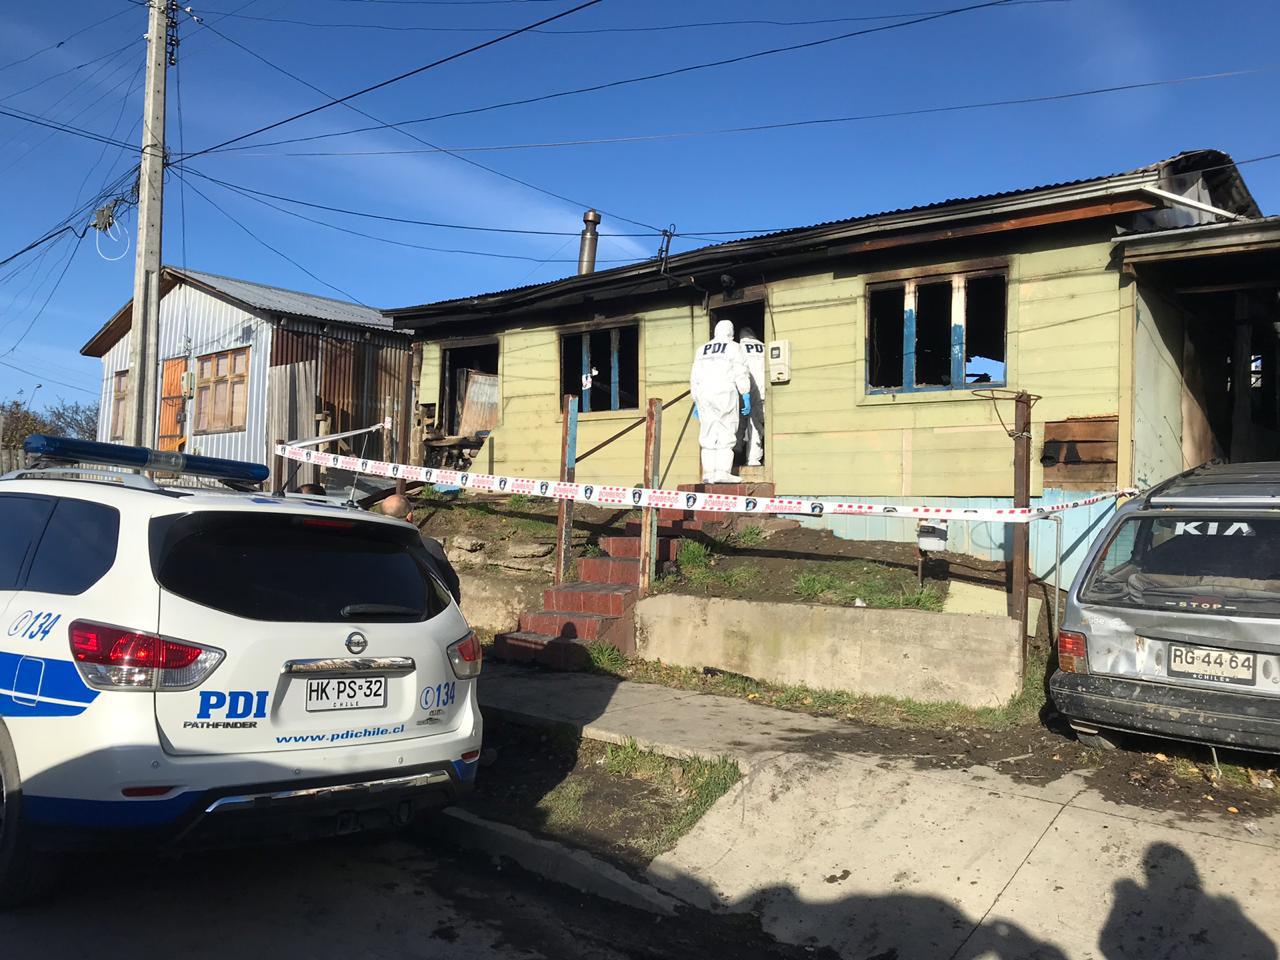 Policía de Investigaciones descartó participación de terceros en la muerte de una persona en un incendio ocurrido esta madrugada en Puerto Natales